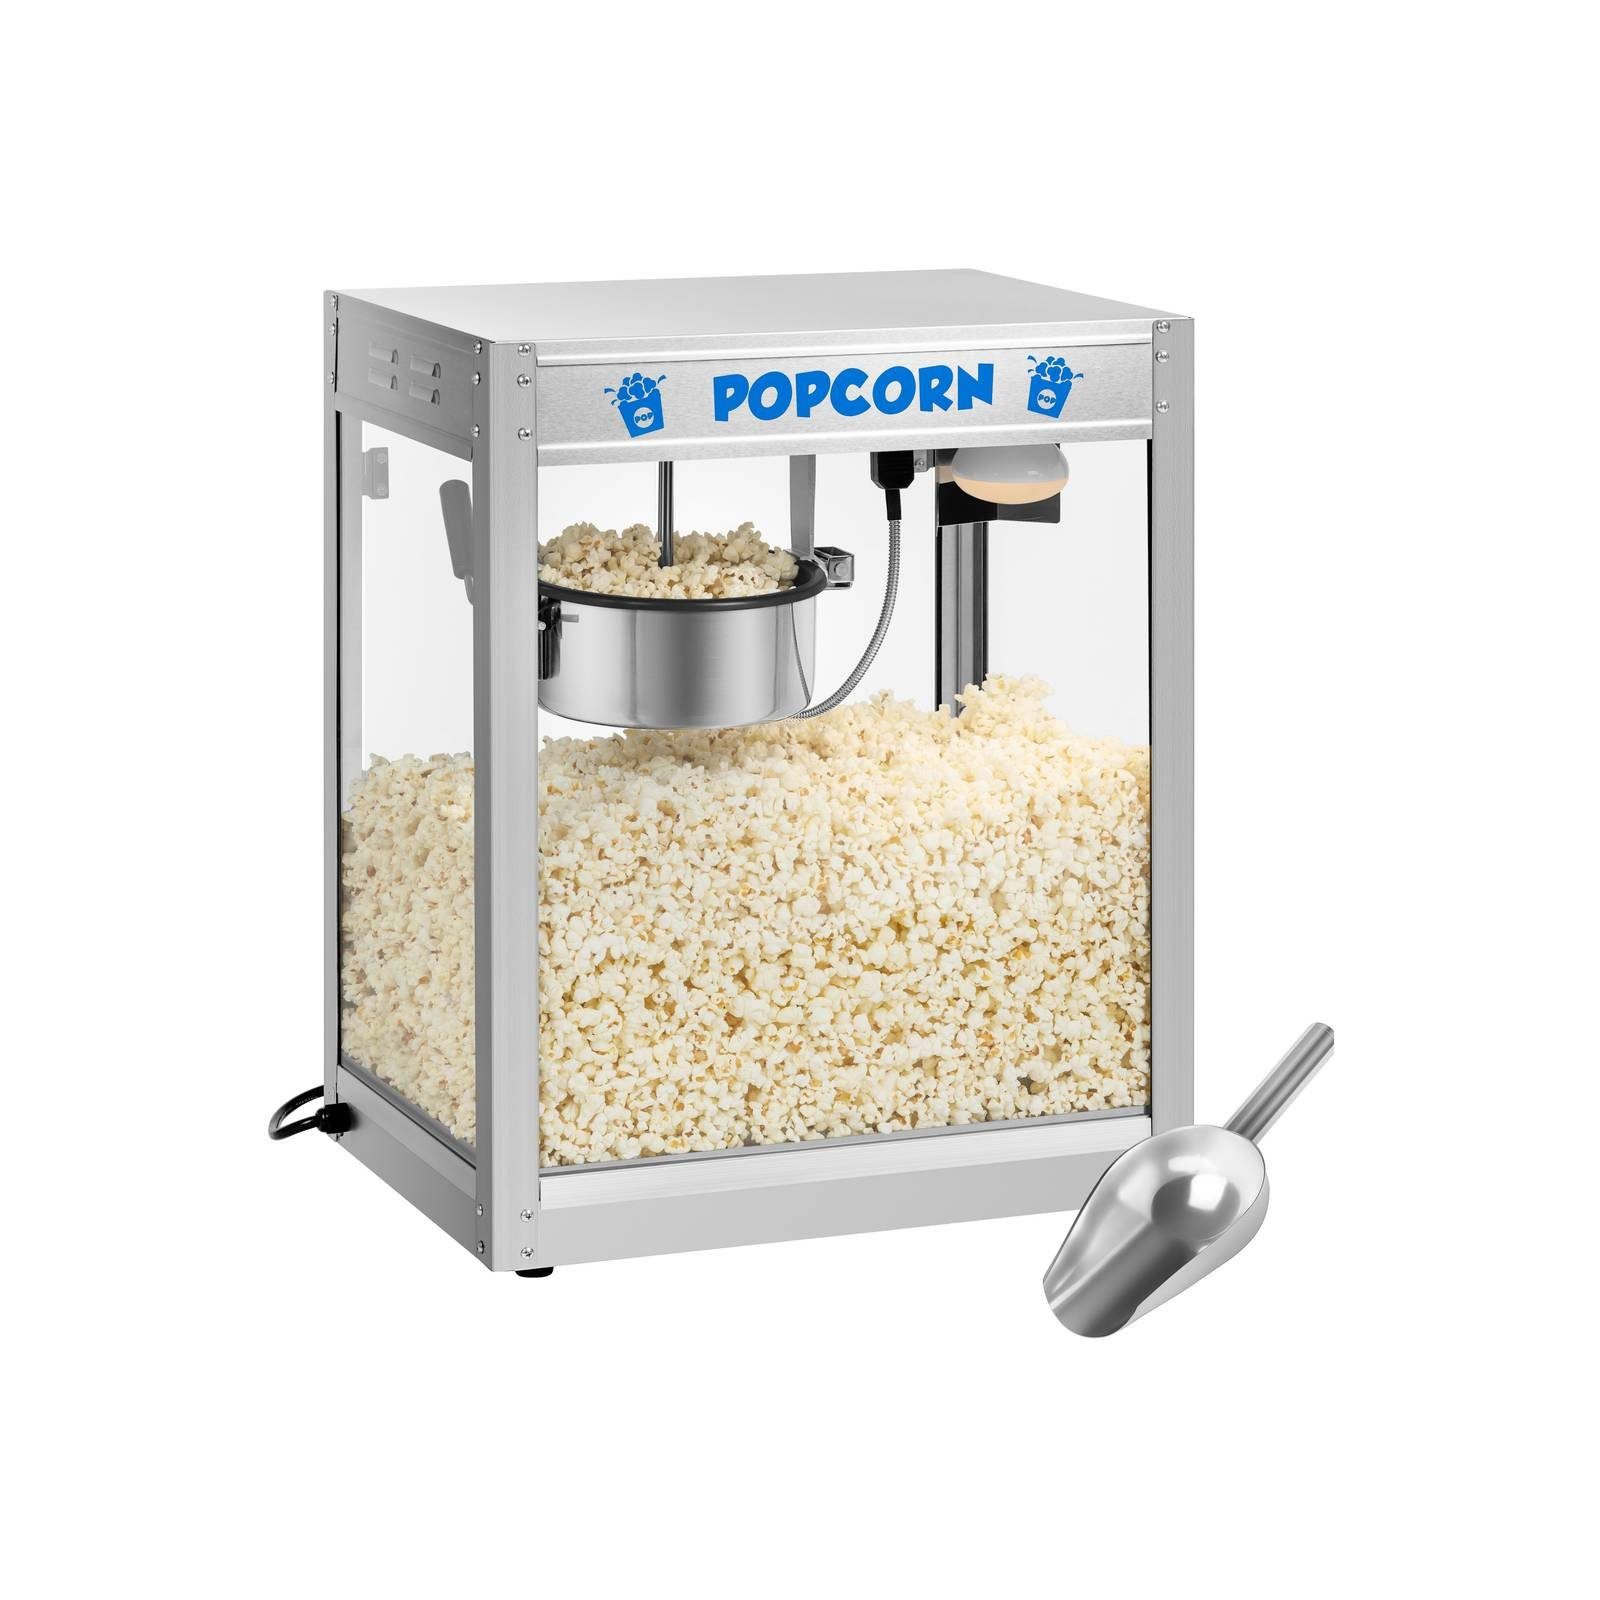 Royal Catering Popcornmaschine Popcornmaschine Popcornmaker Popcornautomat Popkornmaschine